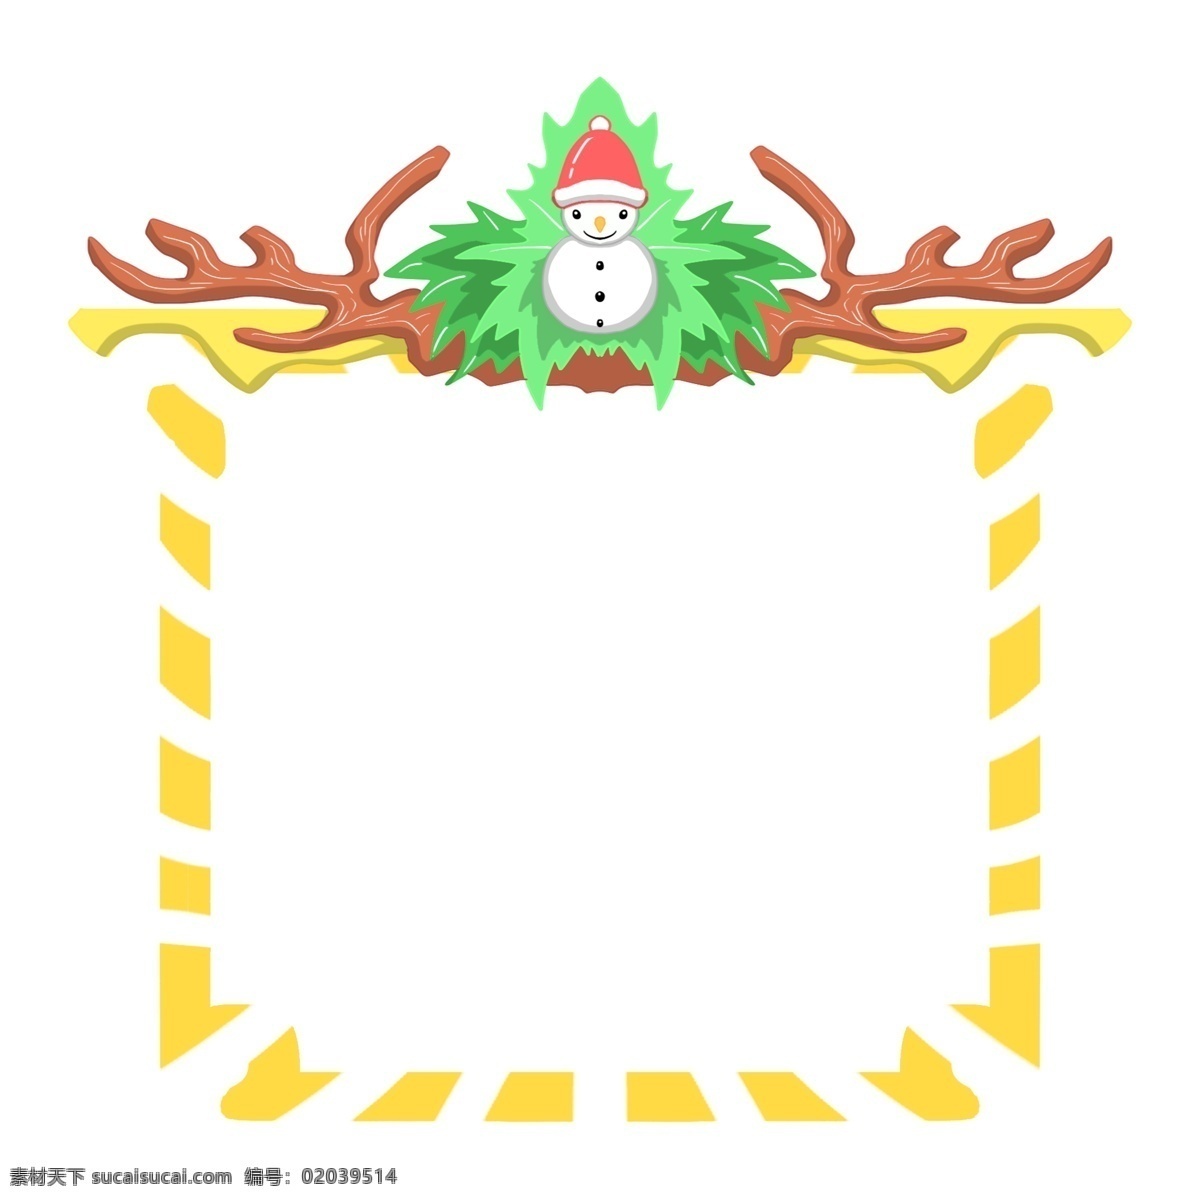 圣诞 雪人 边框 插画 手绘边框 圣诞节边框 白色的雪人 戴 帽 绿色的叶子 黄白条纹边框